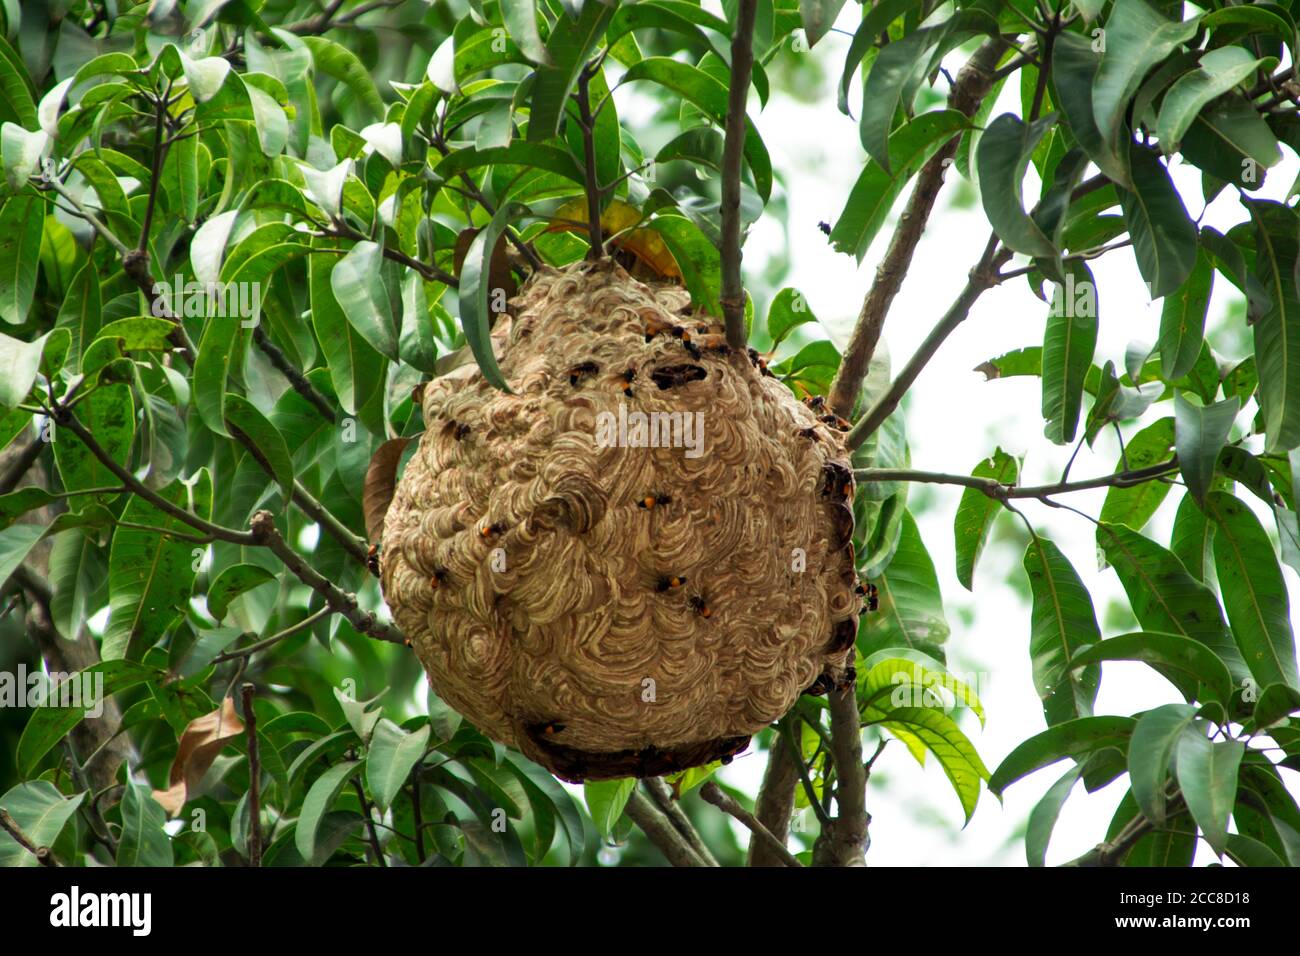 C'est une image du nid vimrul ou de la maison vimrul en haut de l'arbre Banque D'Images